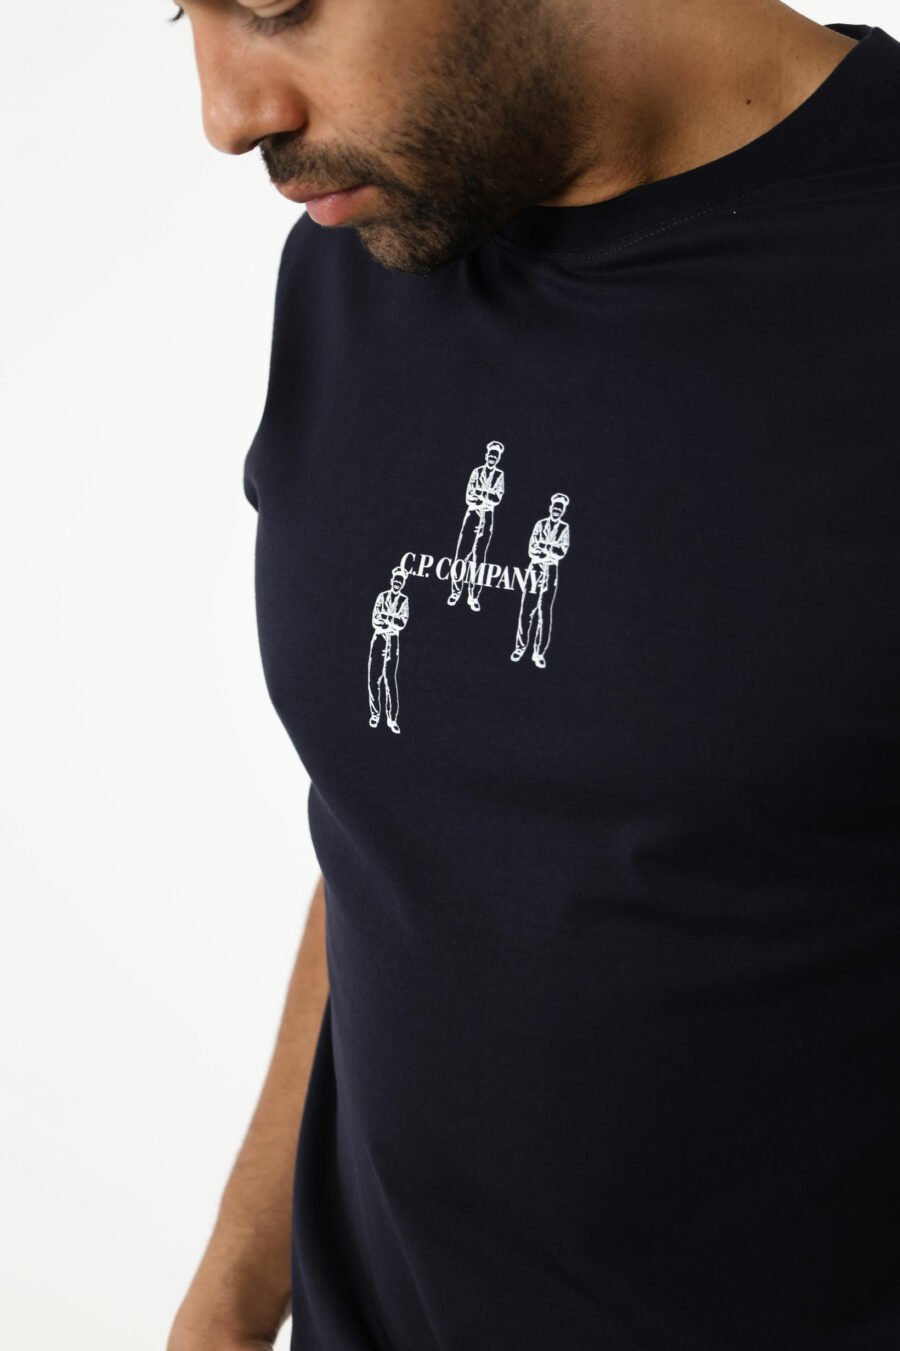 Dunkelblaues T-Shirt mit Minilogue "cp" mit zentrierten Matrosen - 111348